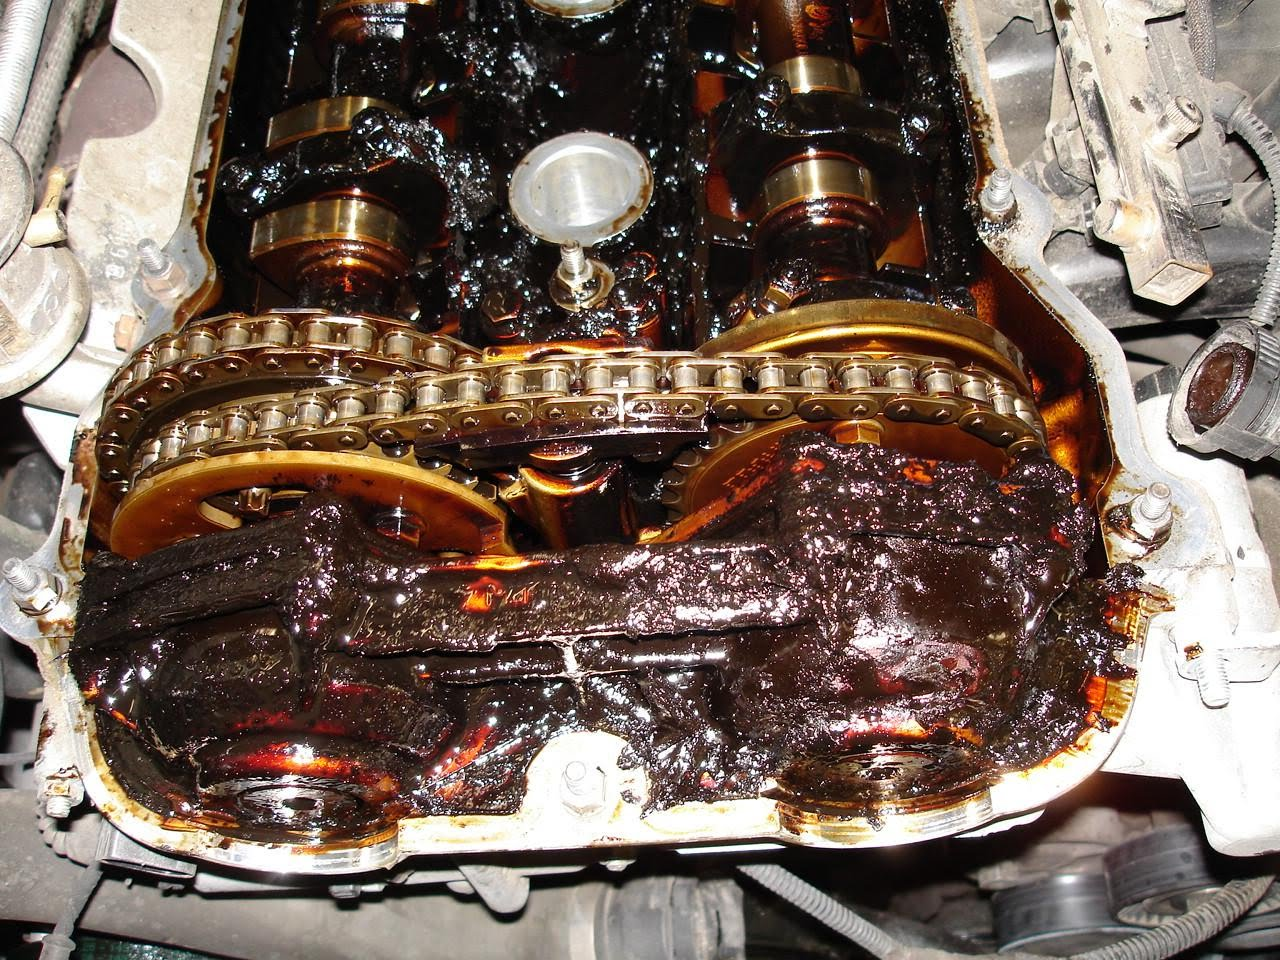 Стоит ли менять масло в двигателе, если оно почернело?